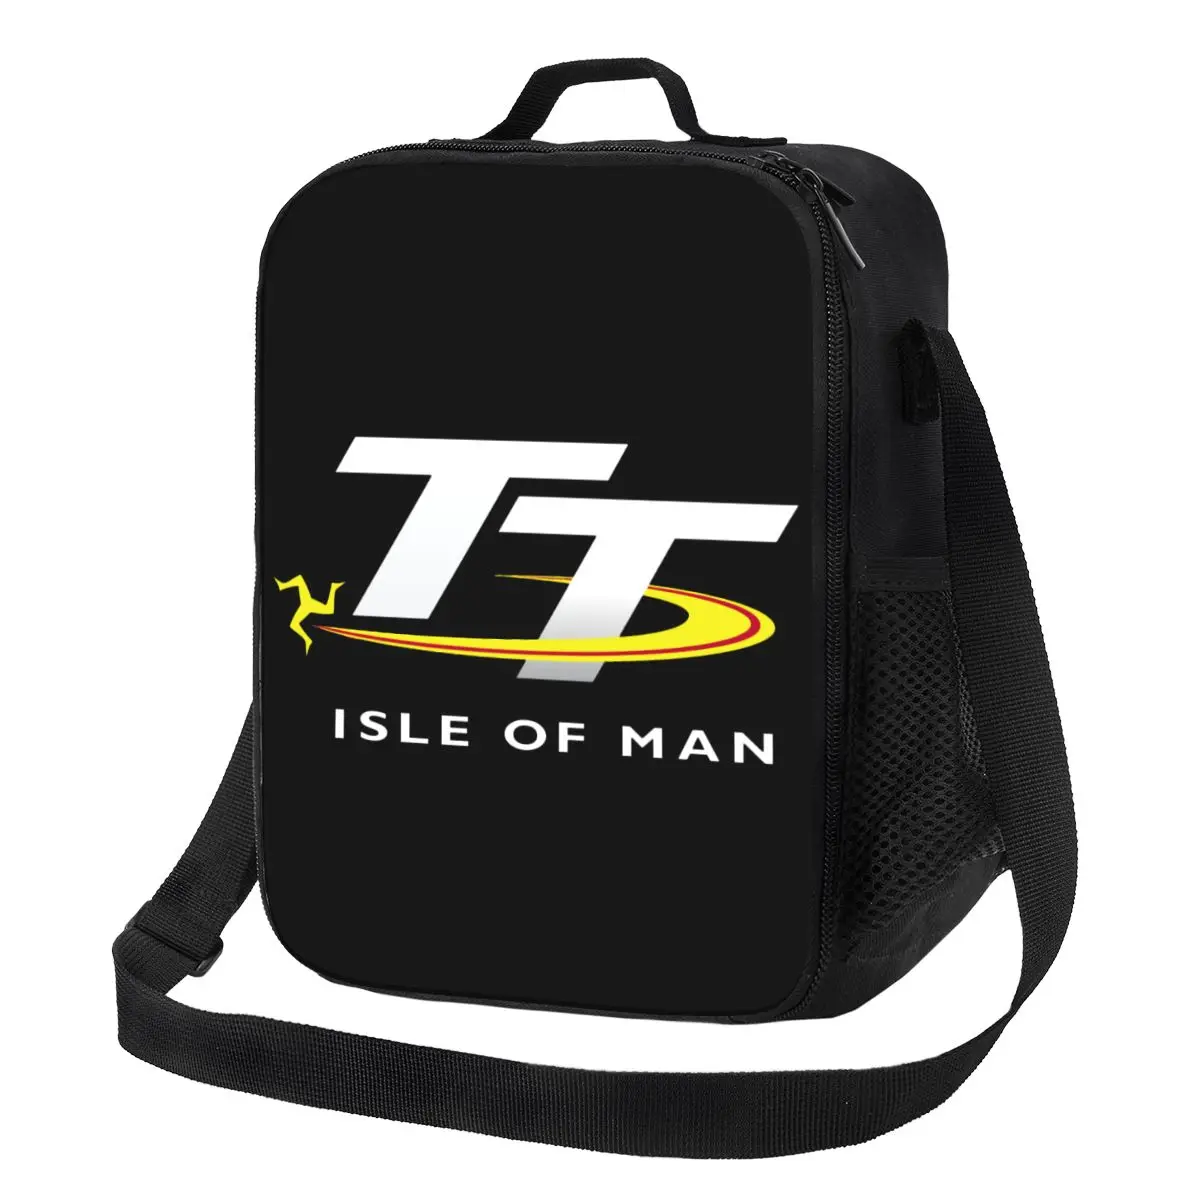 

Термоизолированная сумка для ланча с изображением флага острова Мэн TT, Портативный Ланч-контейнер для работы, школы, путешествий, многофункциональная коробка для еды Bento